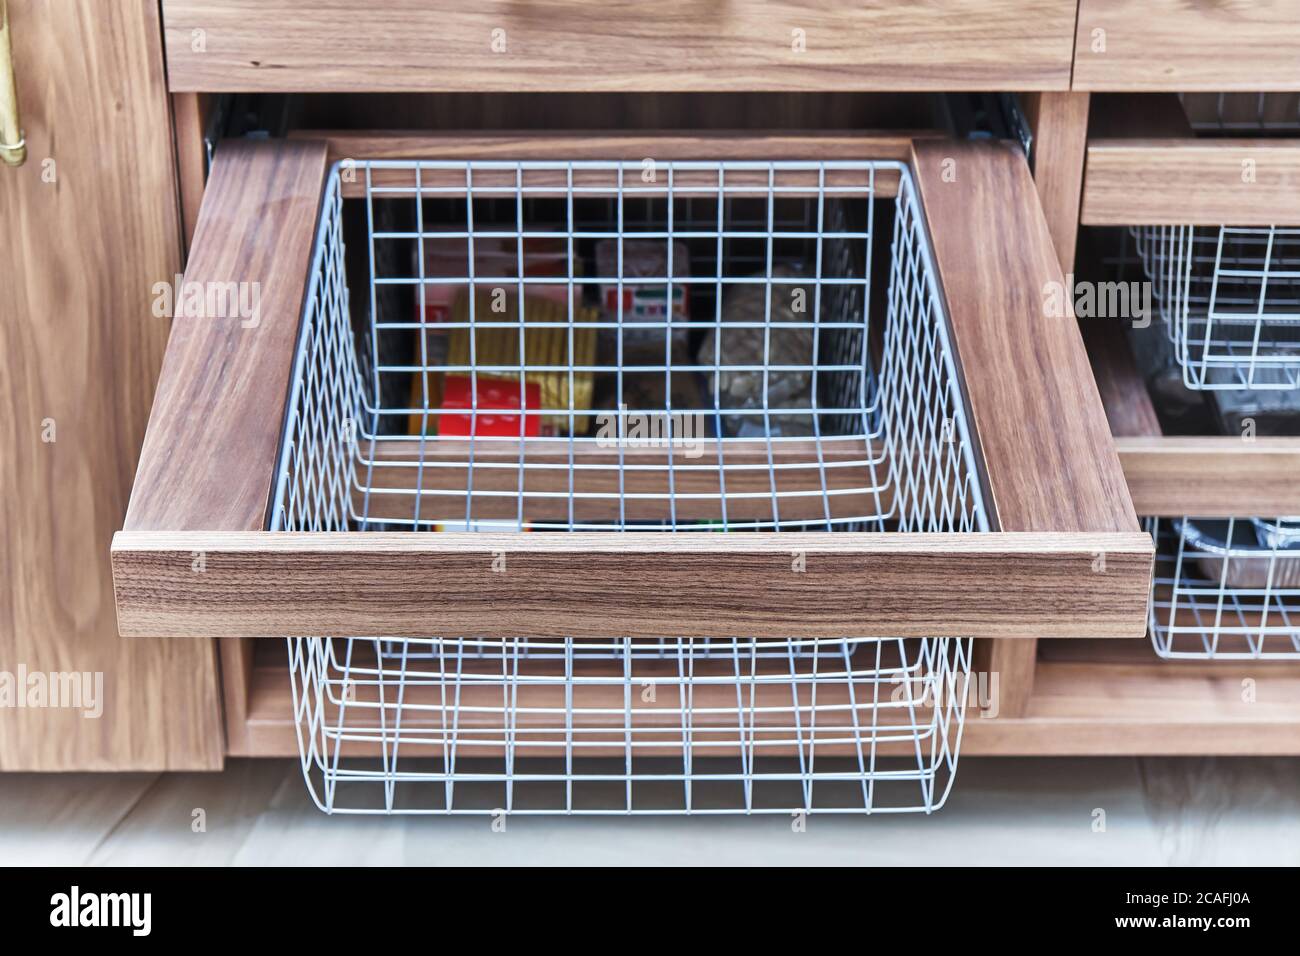 Organisation du stockage. Panier en maille métallique dans un tiroir en bois dans la salle de stockage des aliments. Gros plan Banque D'Images